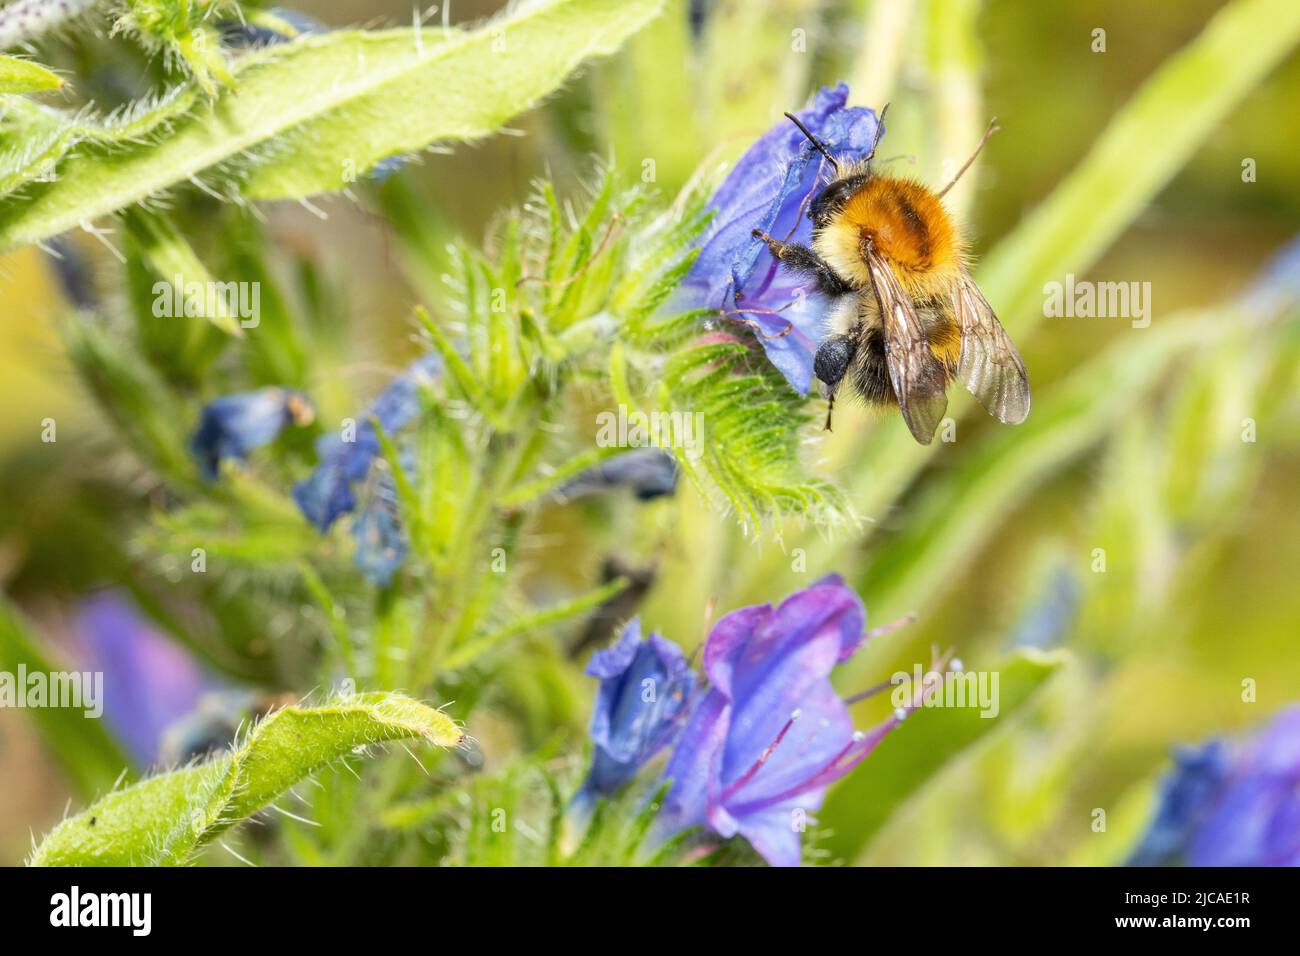 Común carder abejorro visitante flor en un jardín en el sur de Inglaterra. Los abejorros son un grupo importante de polinizadores amenazados por el cambio climático. Foto de stock